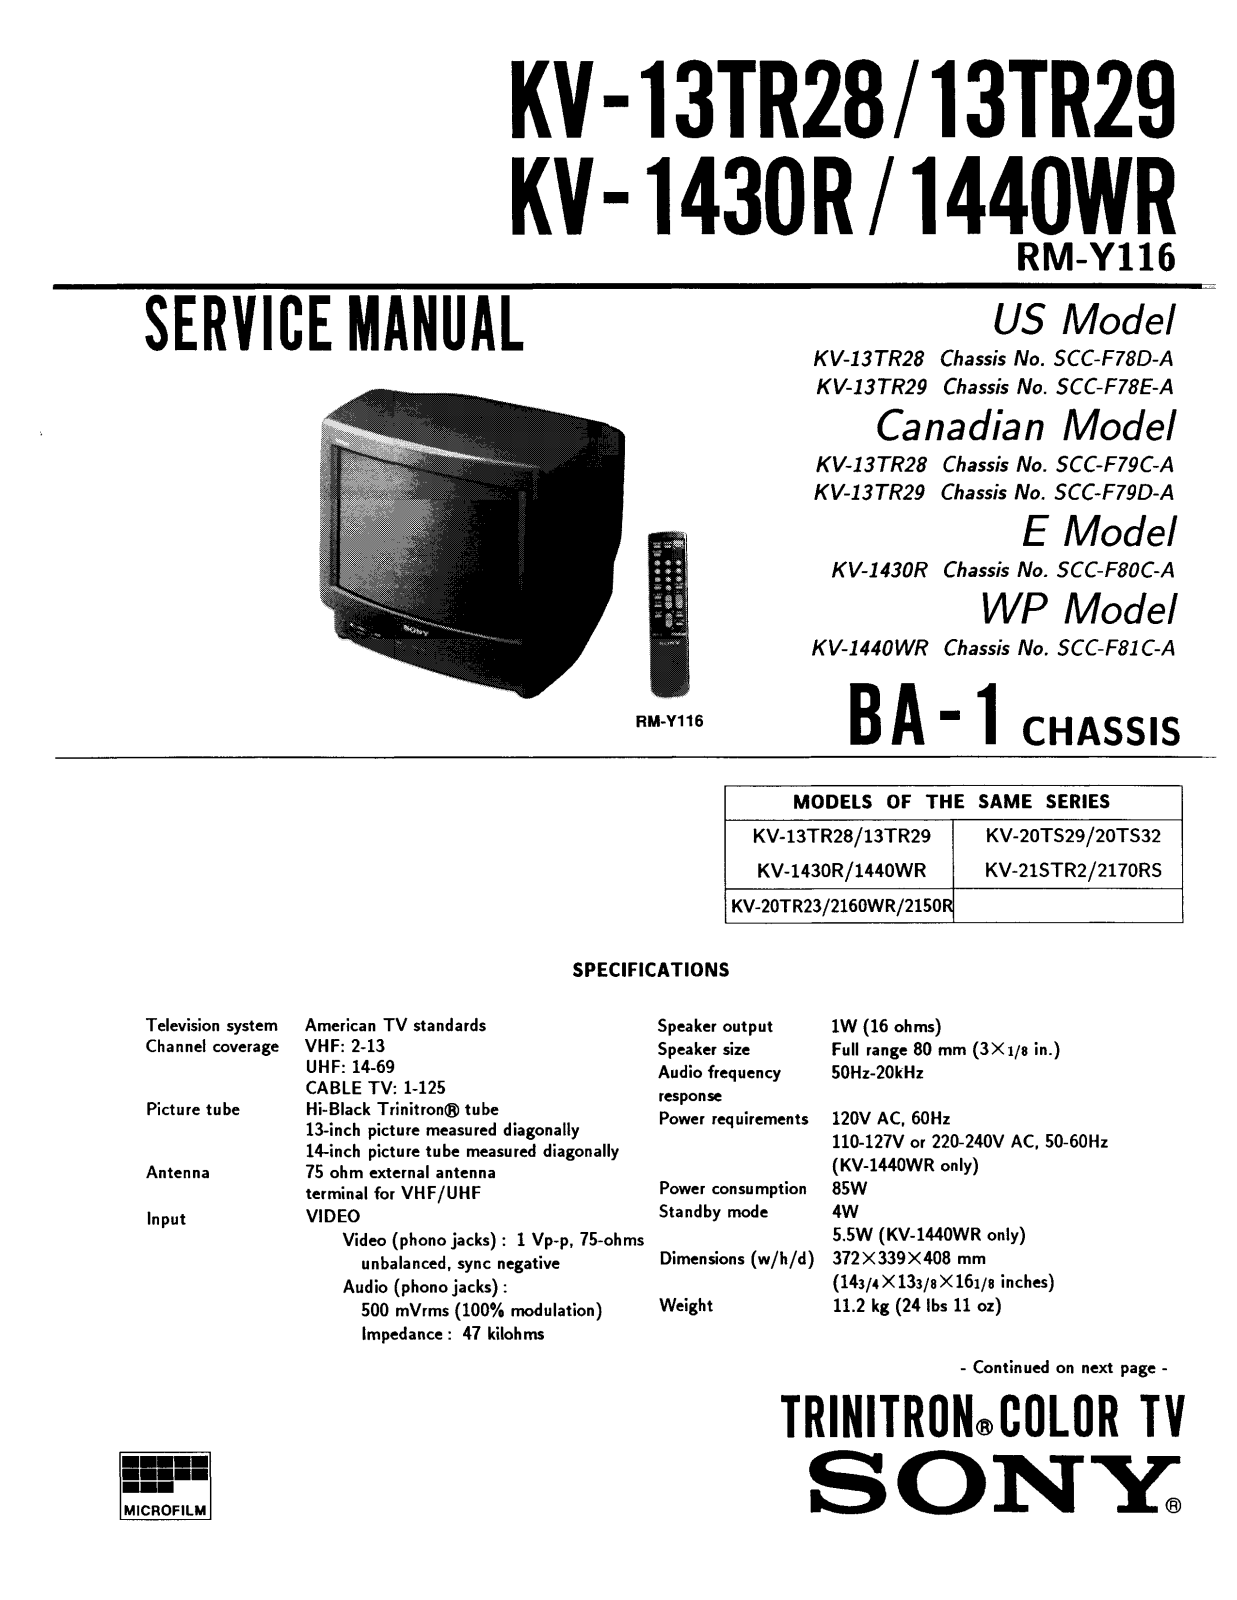 SONY KV1440, KV1430, KV 1440WR, KV-13TR28, KV-13TR29 Service Manual